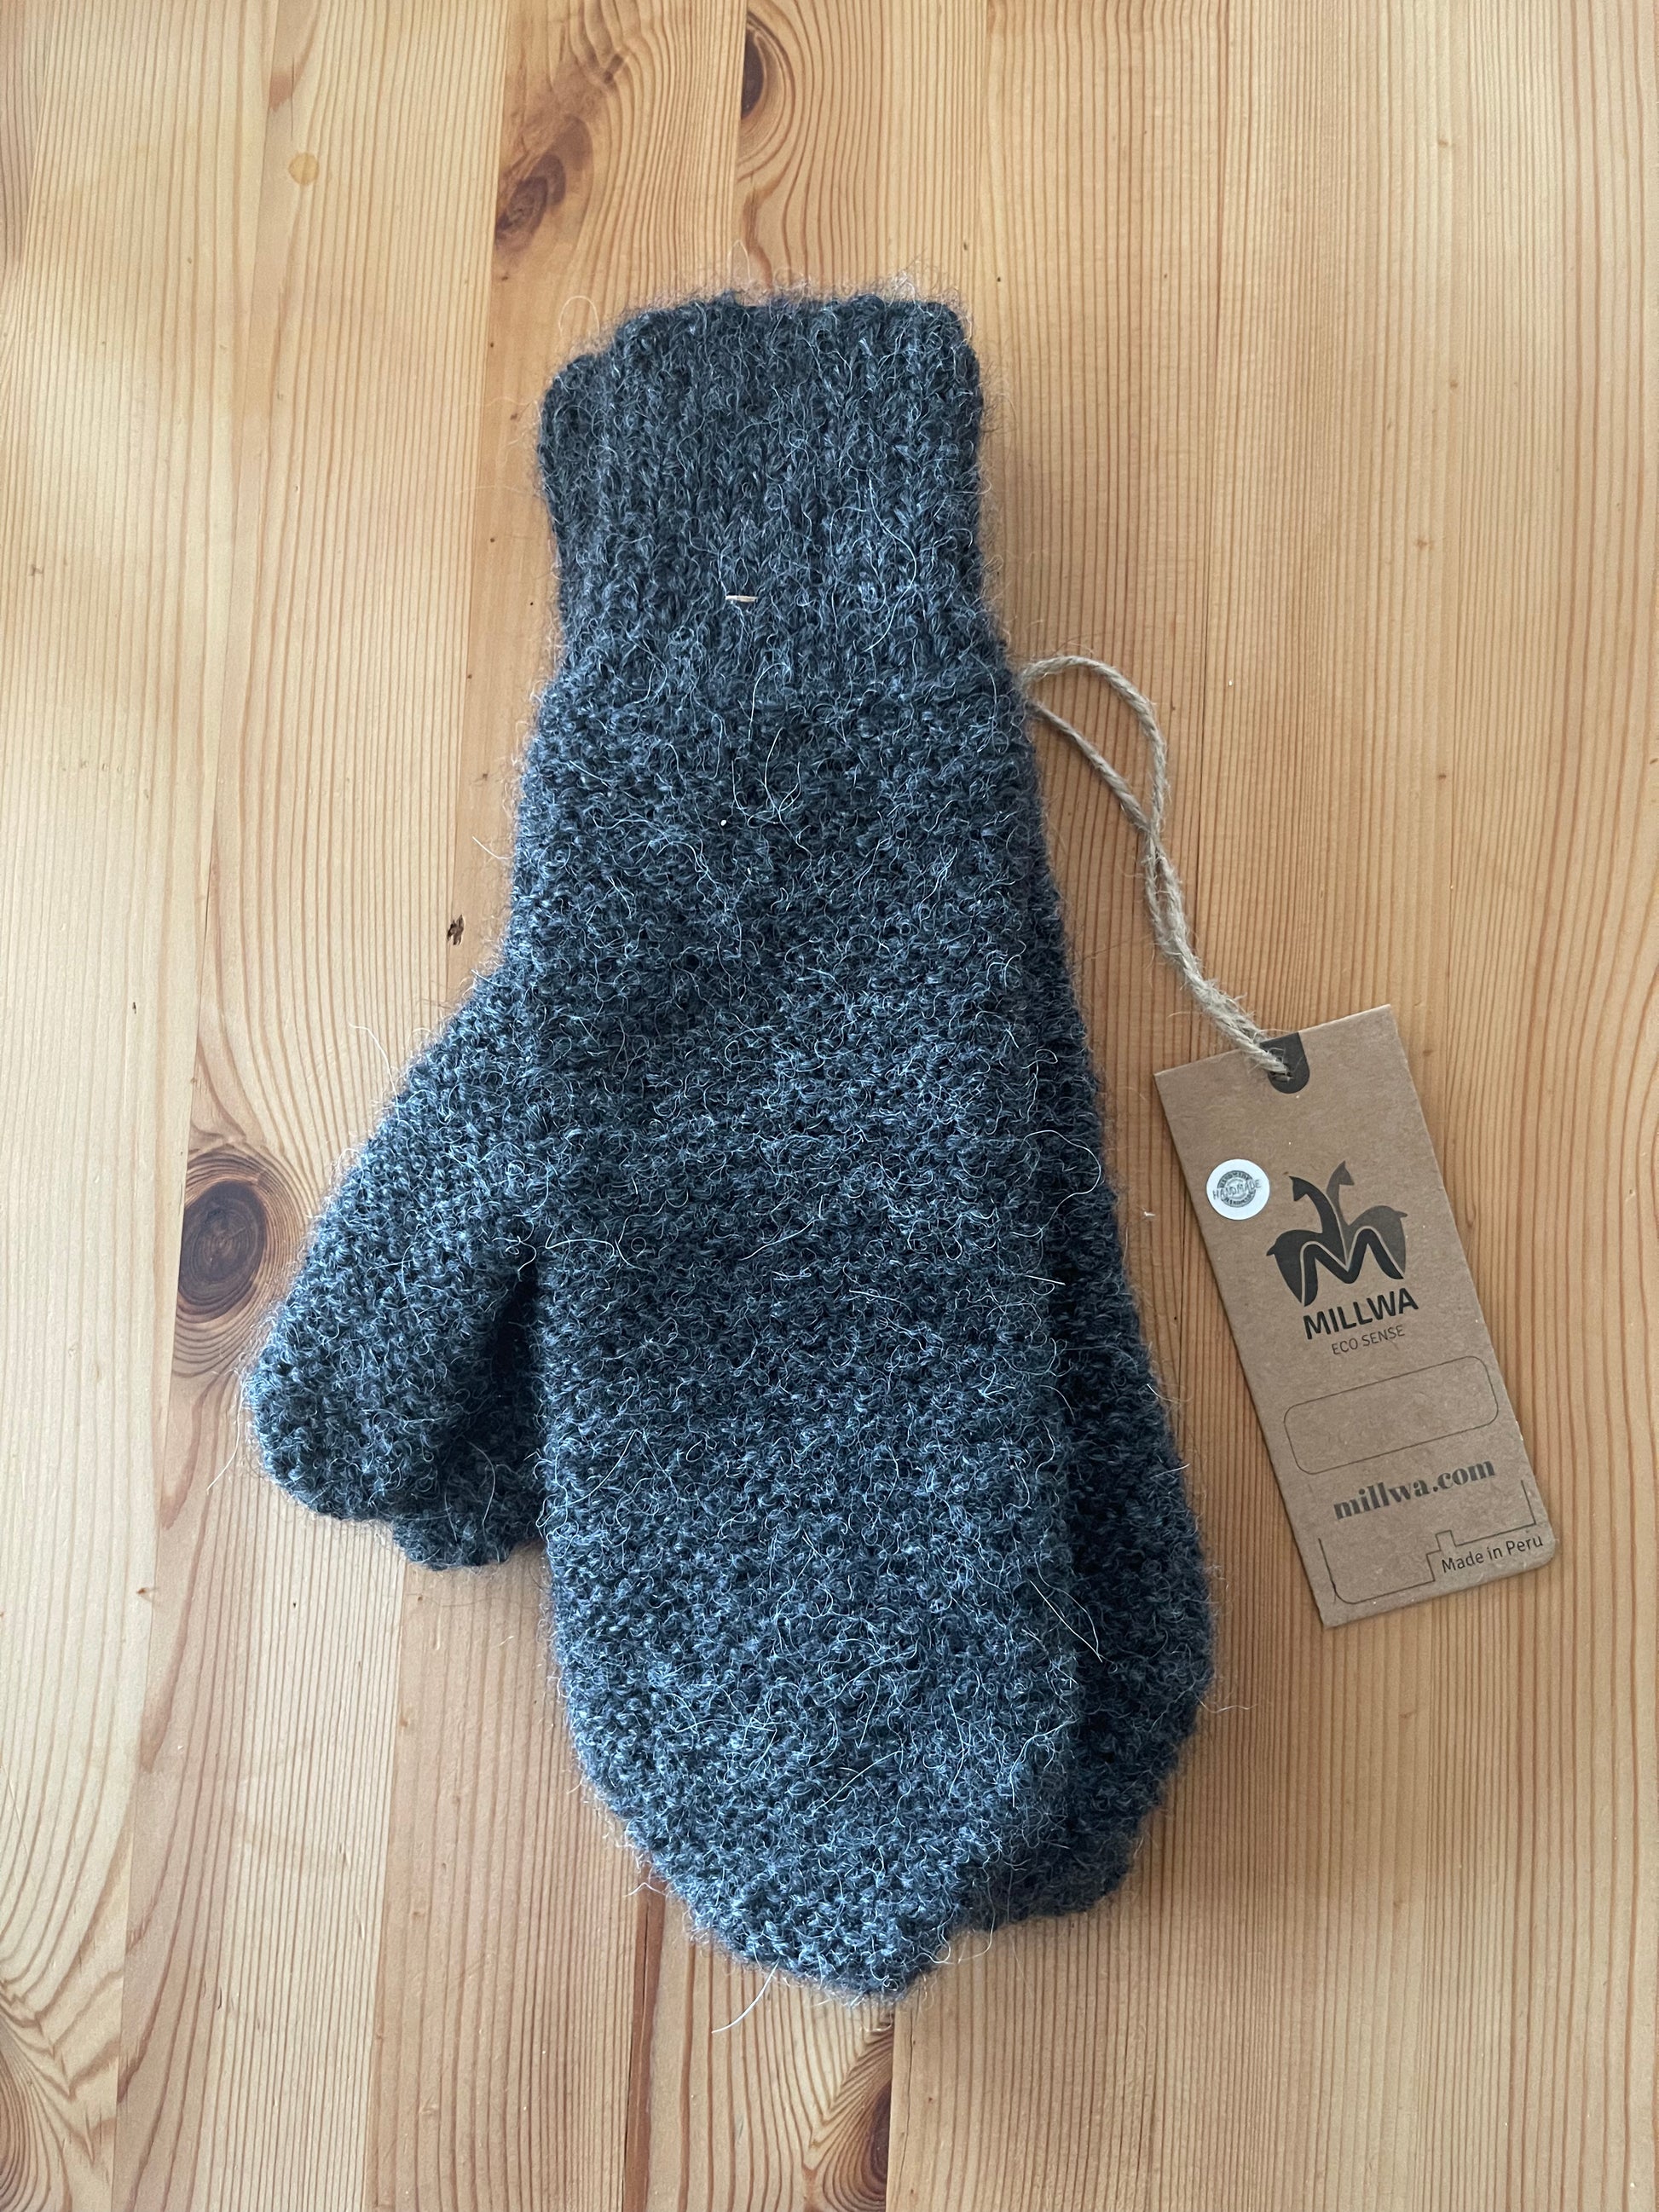 Alpaka Handschuhe für die kalten Jahreszeit - jetzt die Wärme von Alpakawolle entdecken!